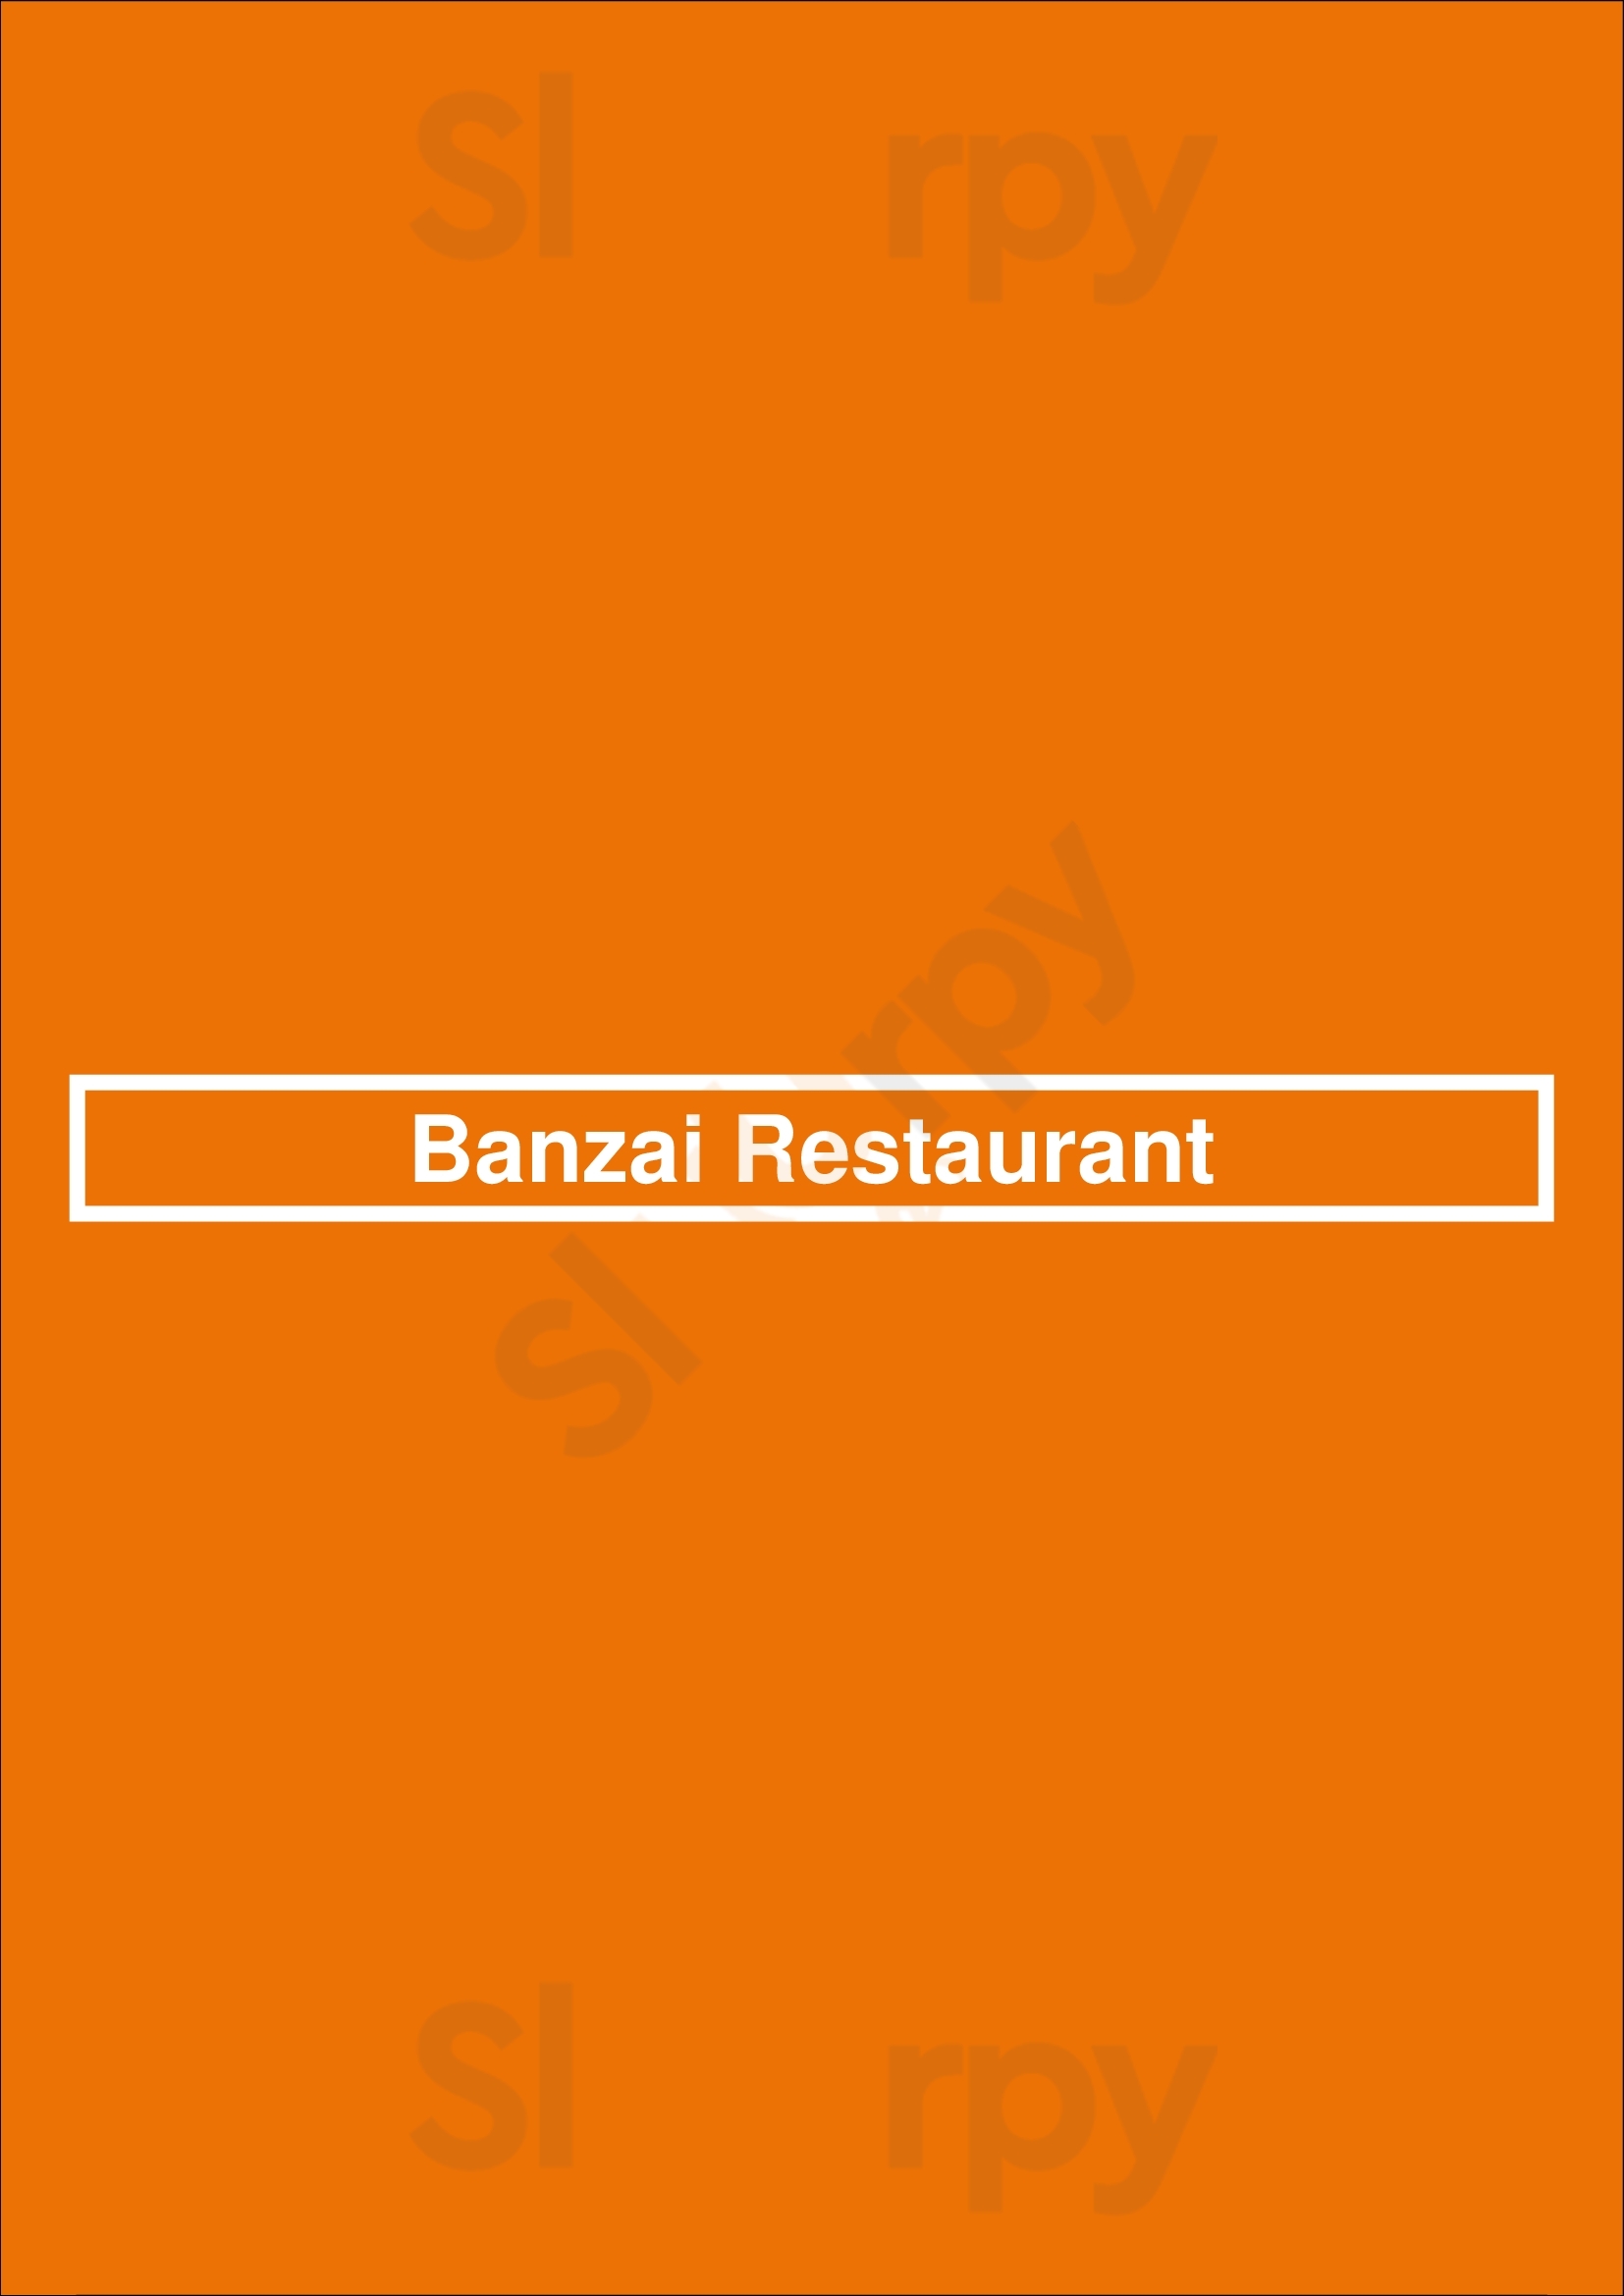 Banzai Restaurant Edmonton Menu - 1